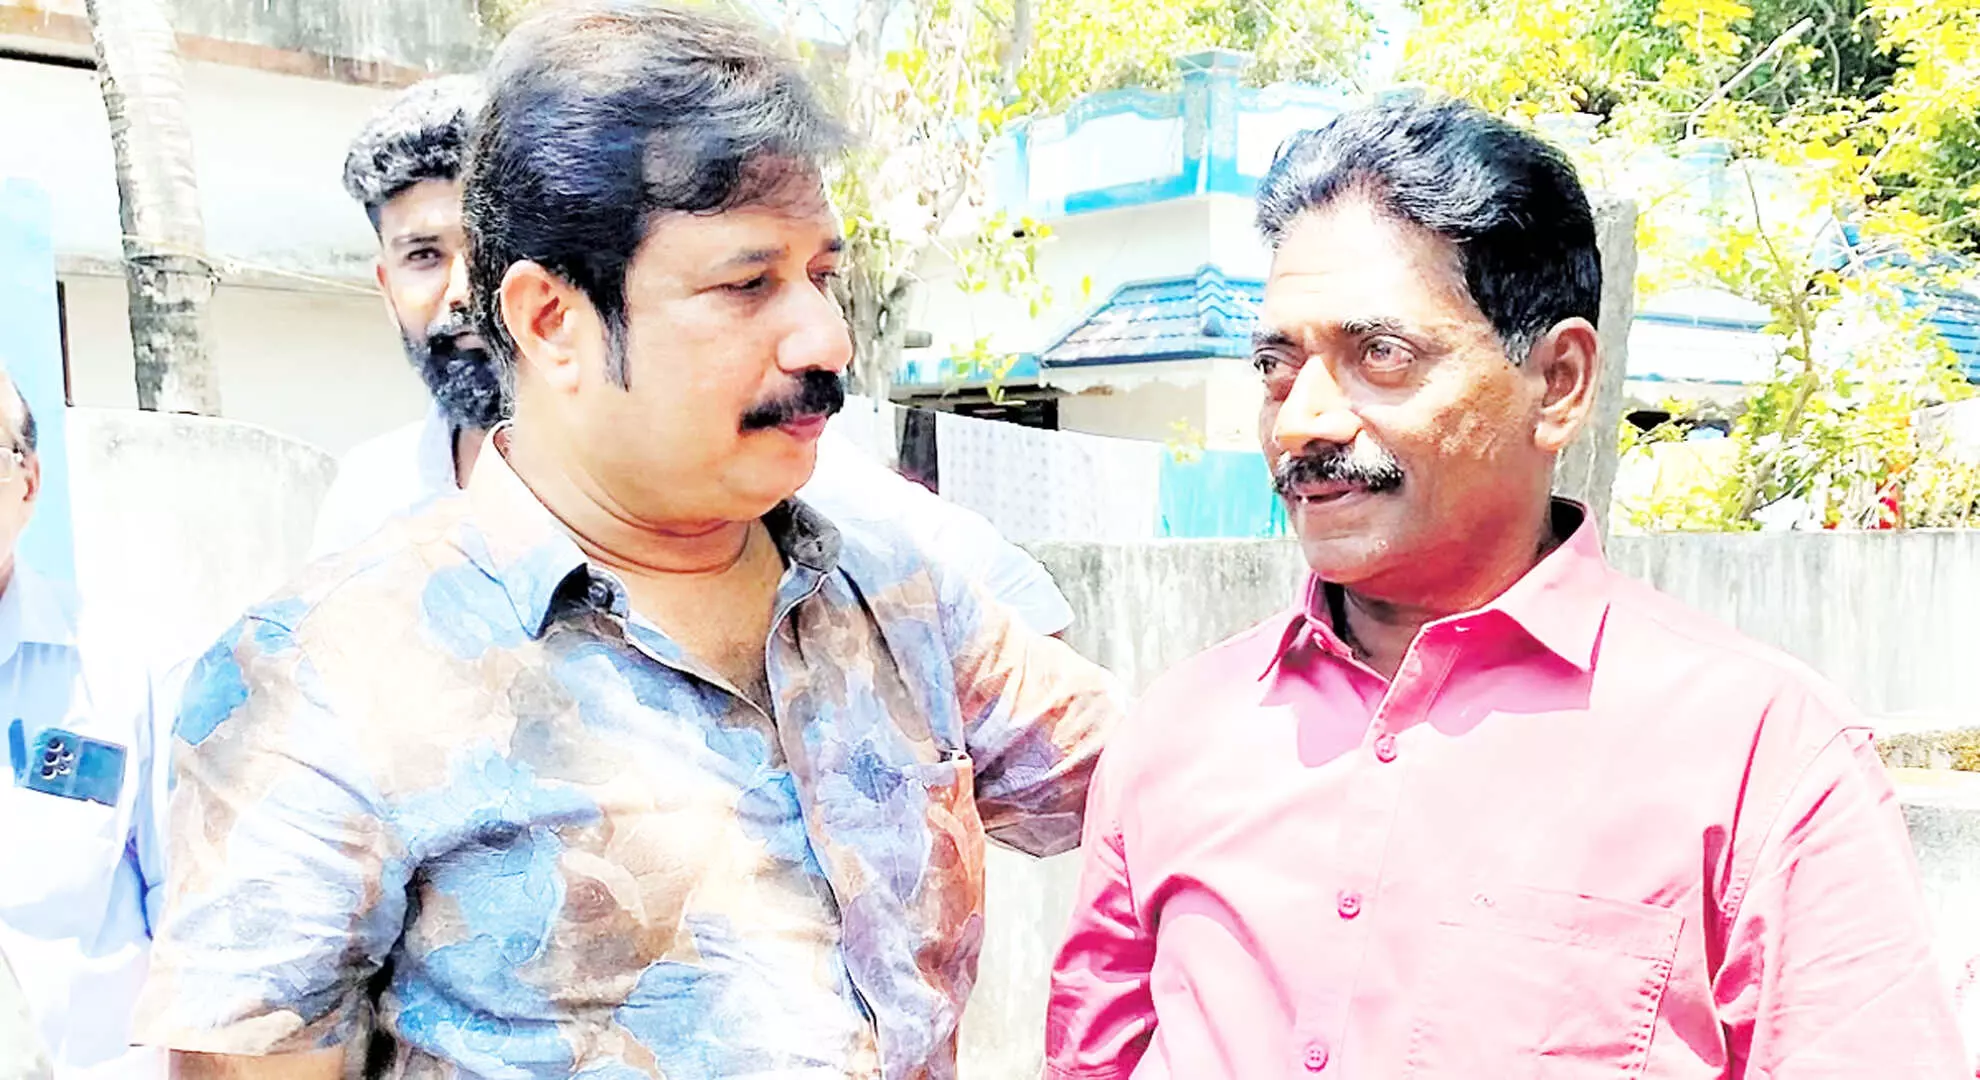 आदुजीविथम का वास्तविक जीवन का नायक अब केरल में एक चुनावी प्रतीक है